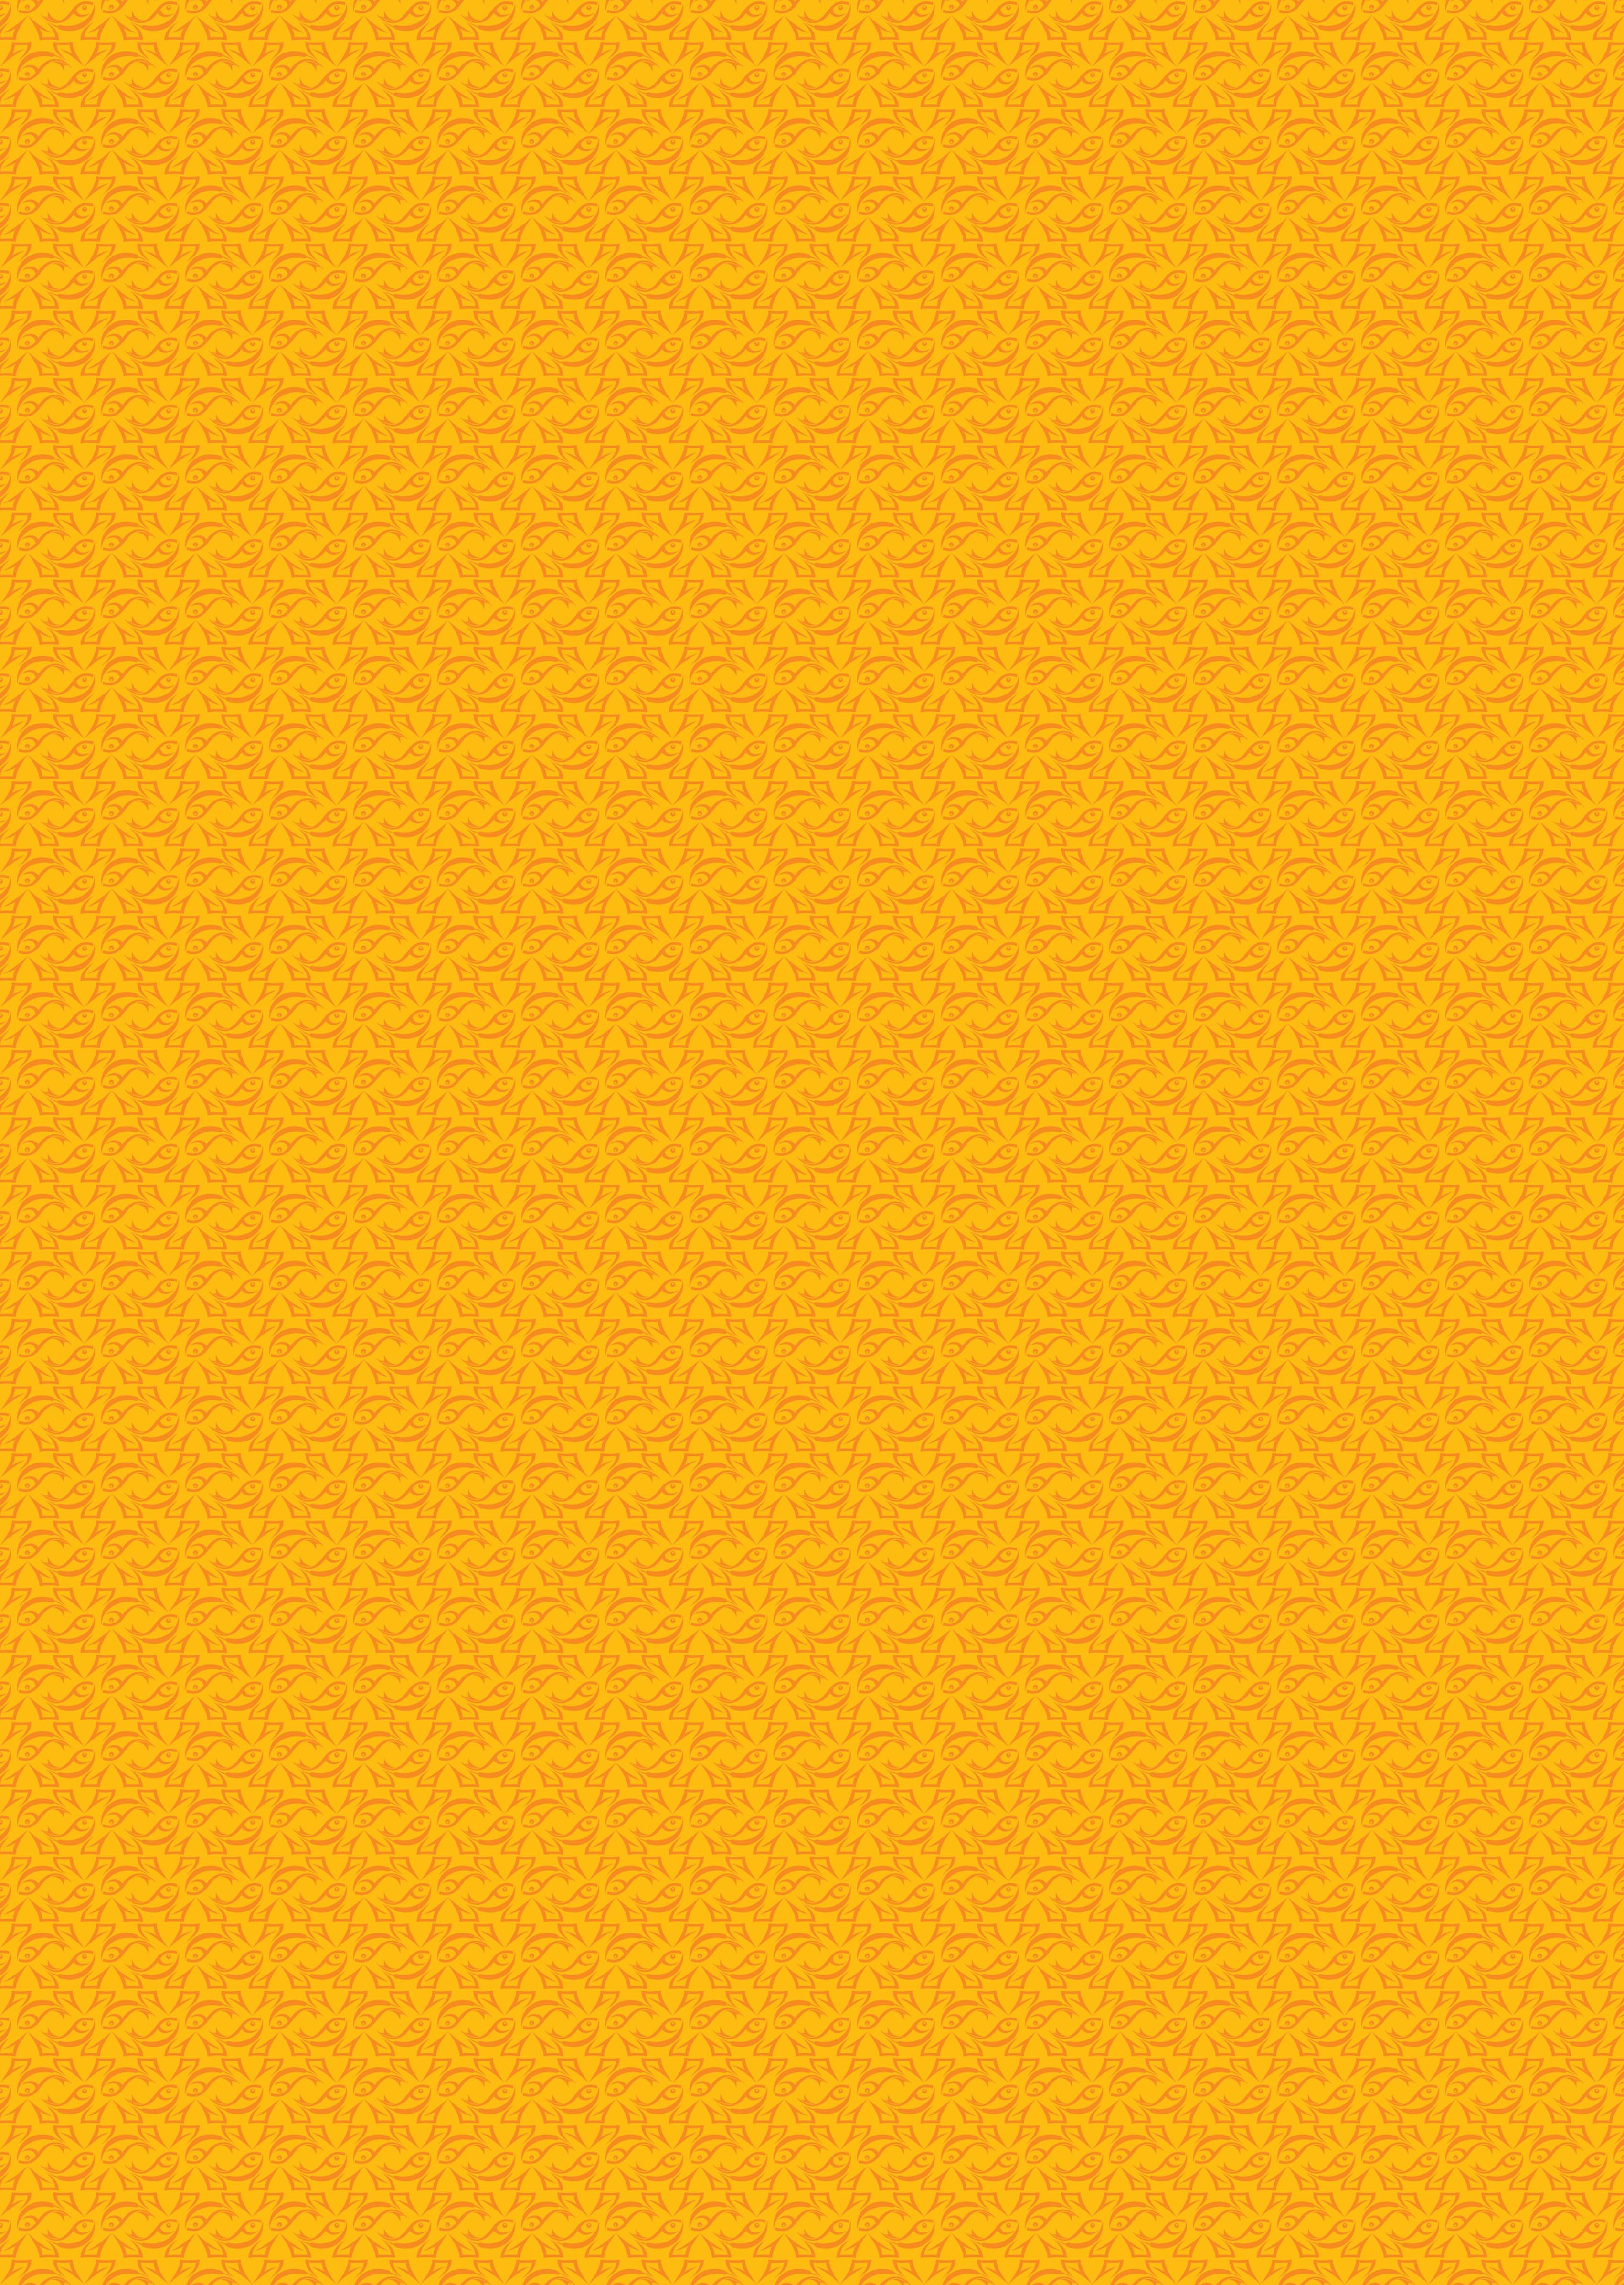 Background Warna Kuning Muda - Aires Gambar